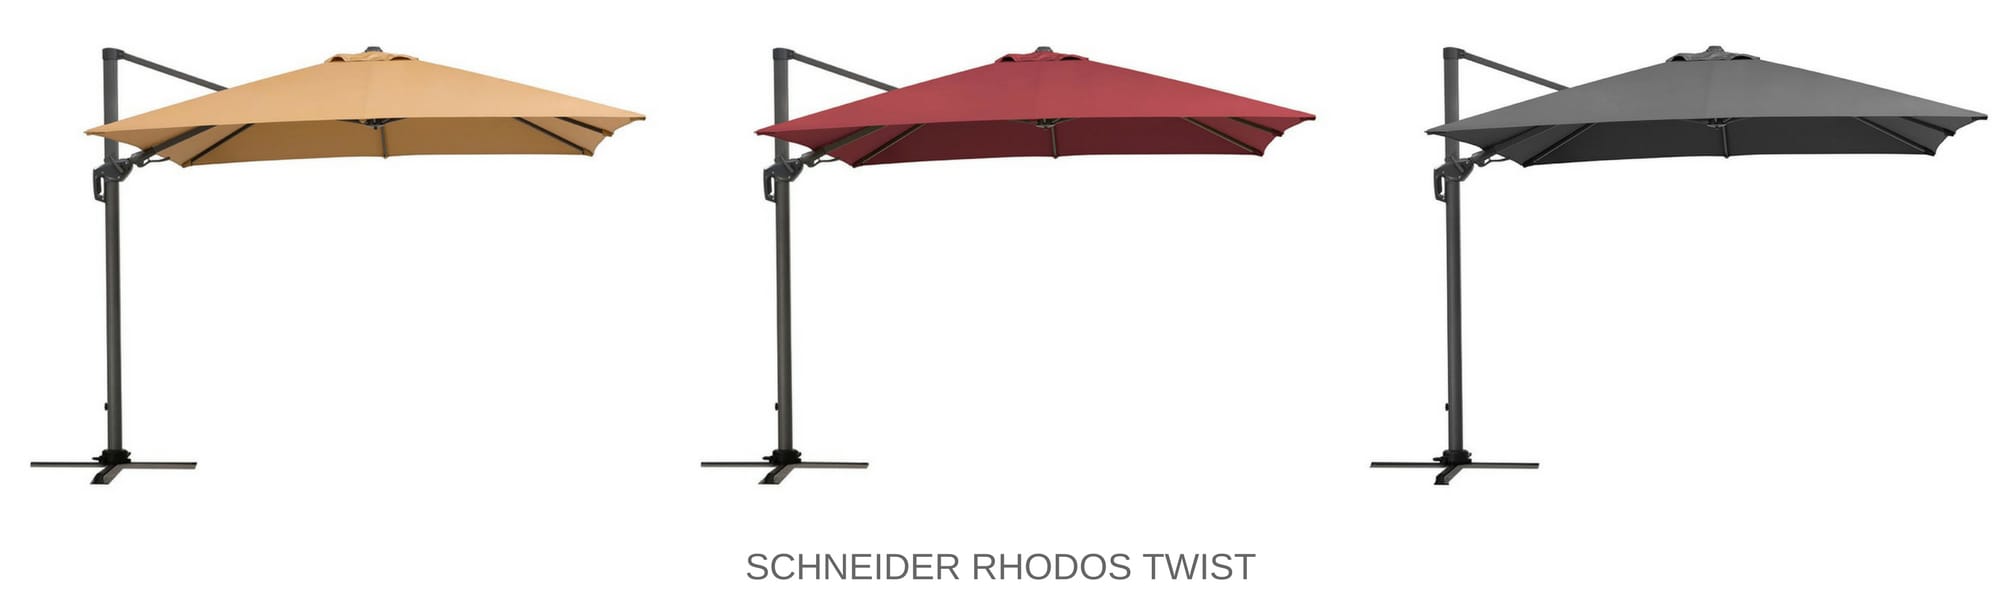 Schneider Rhodos Twist Farbe und Design